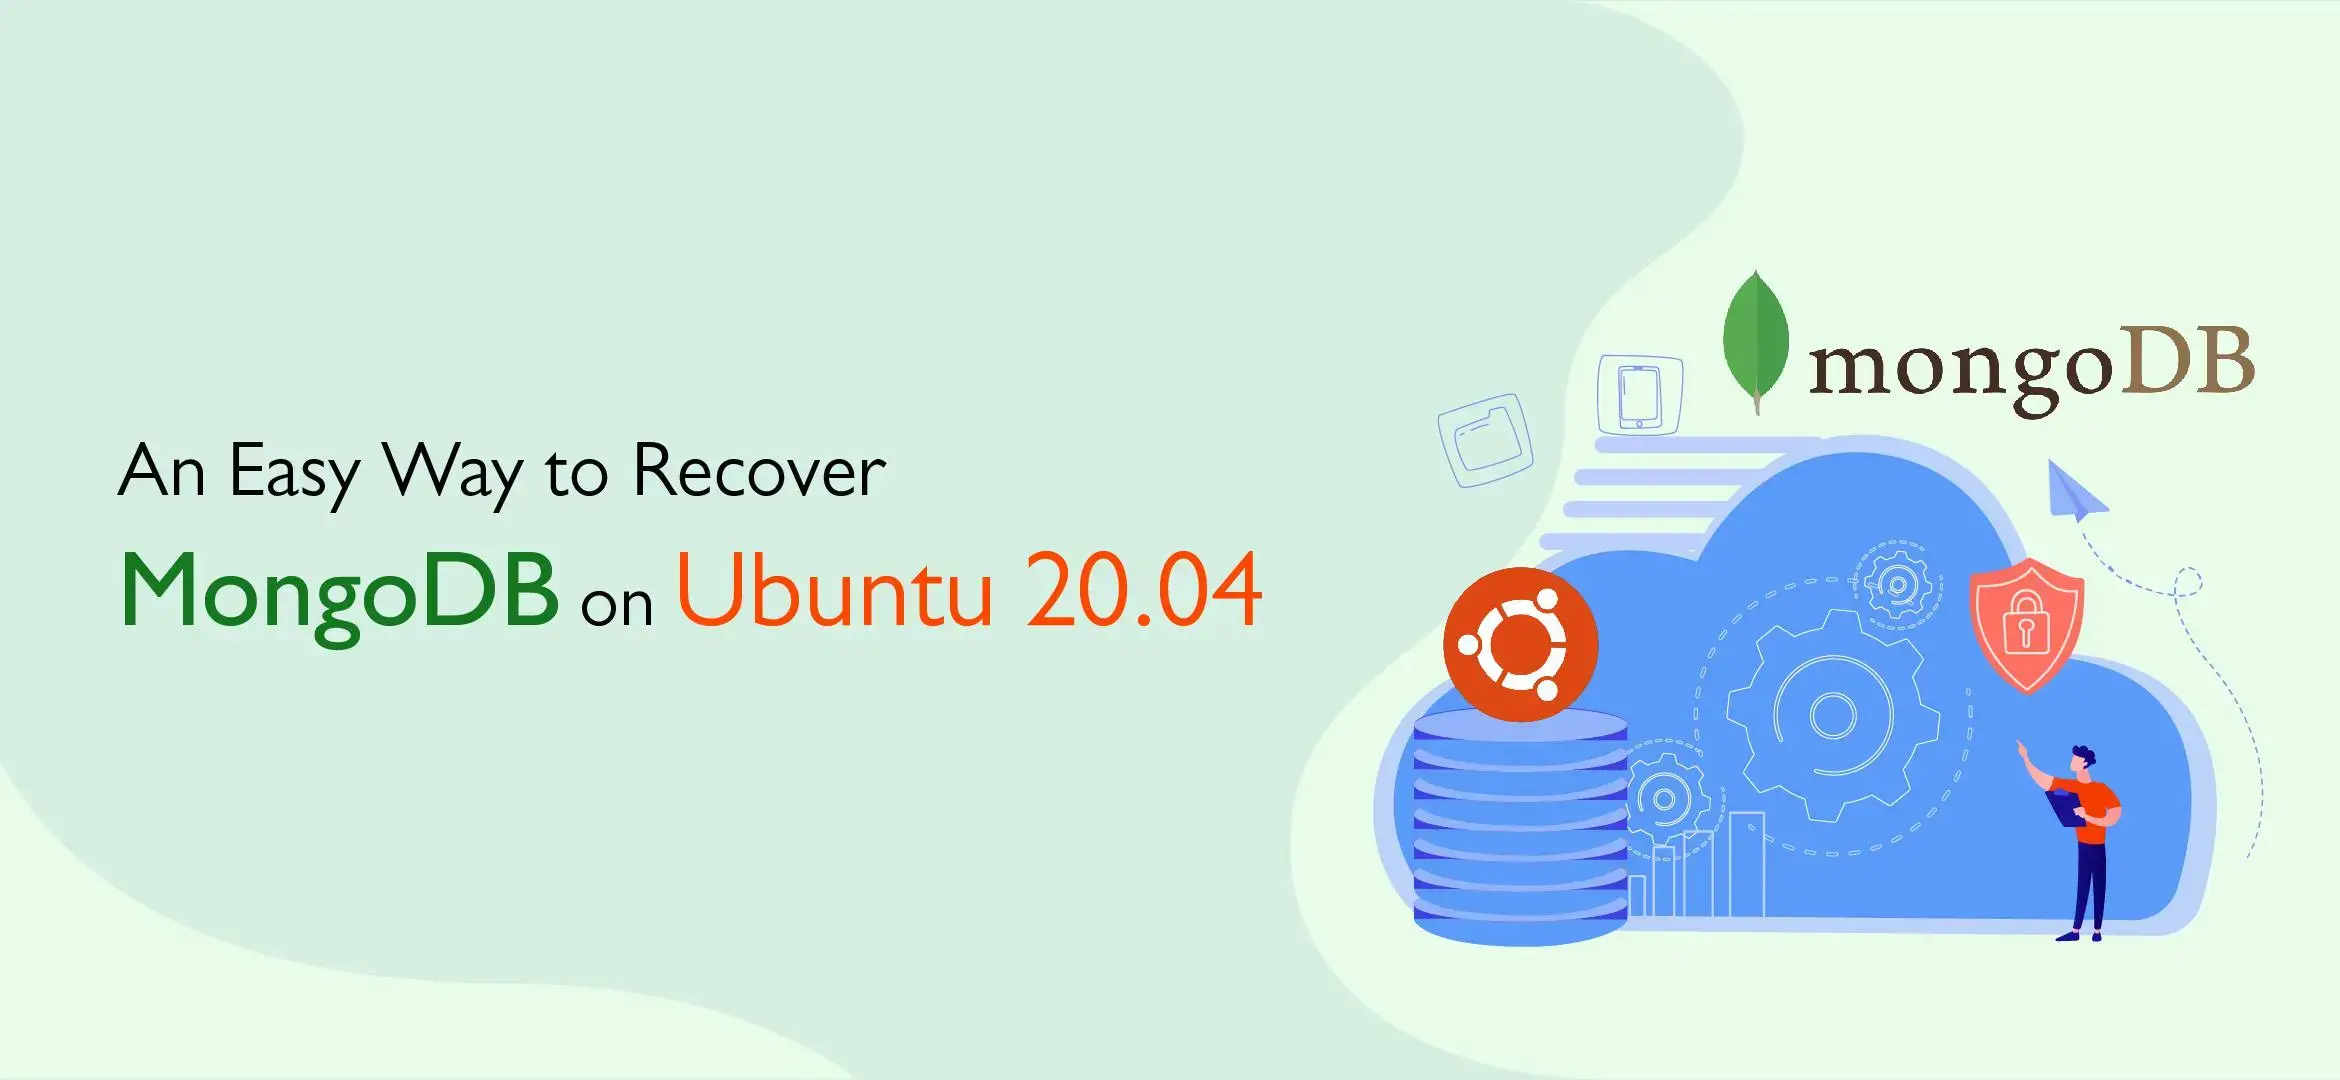 An Easy Way to Recover MongoDB on Ubuntu 20.04